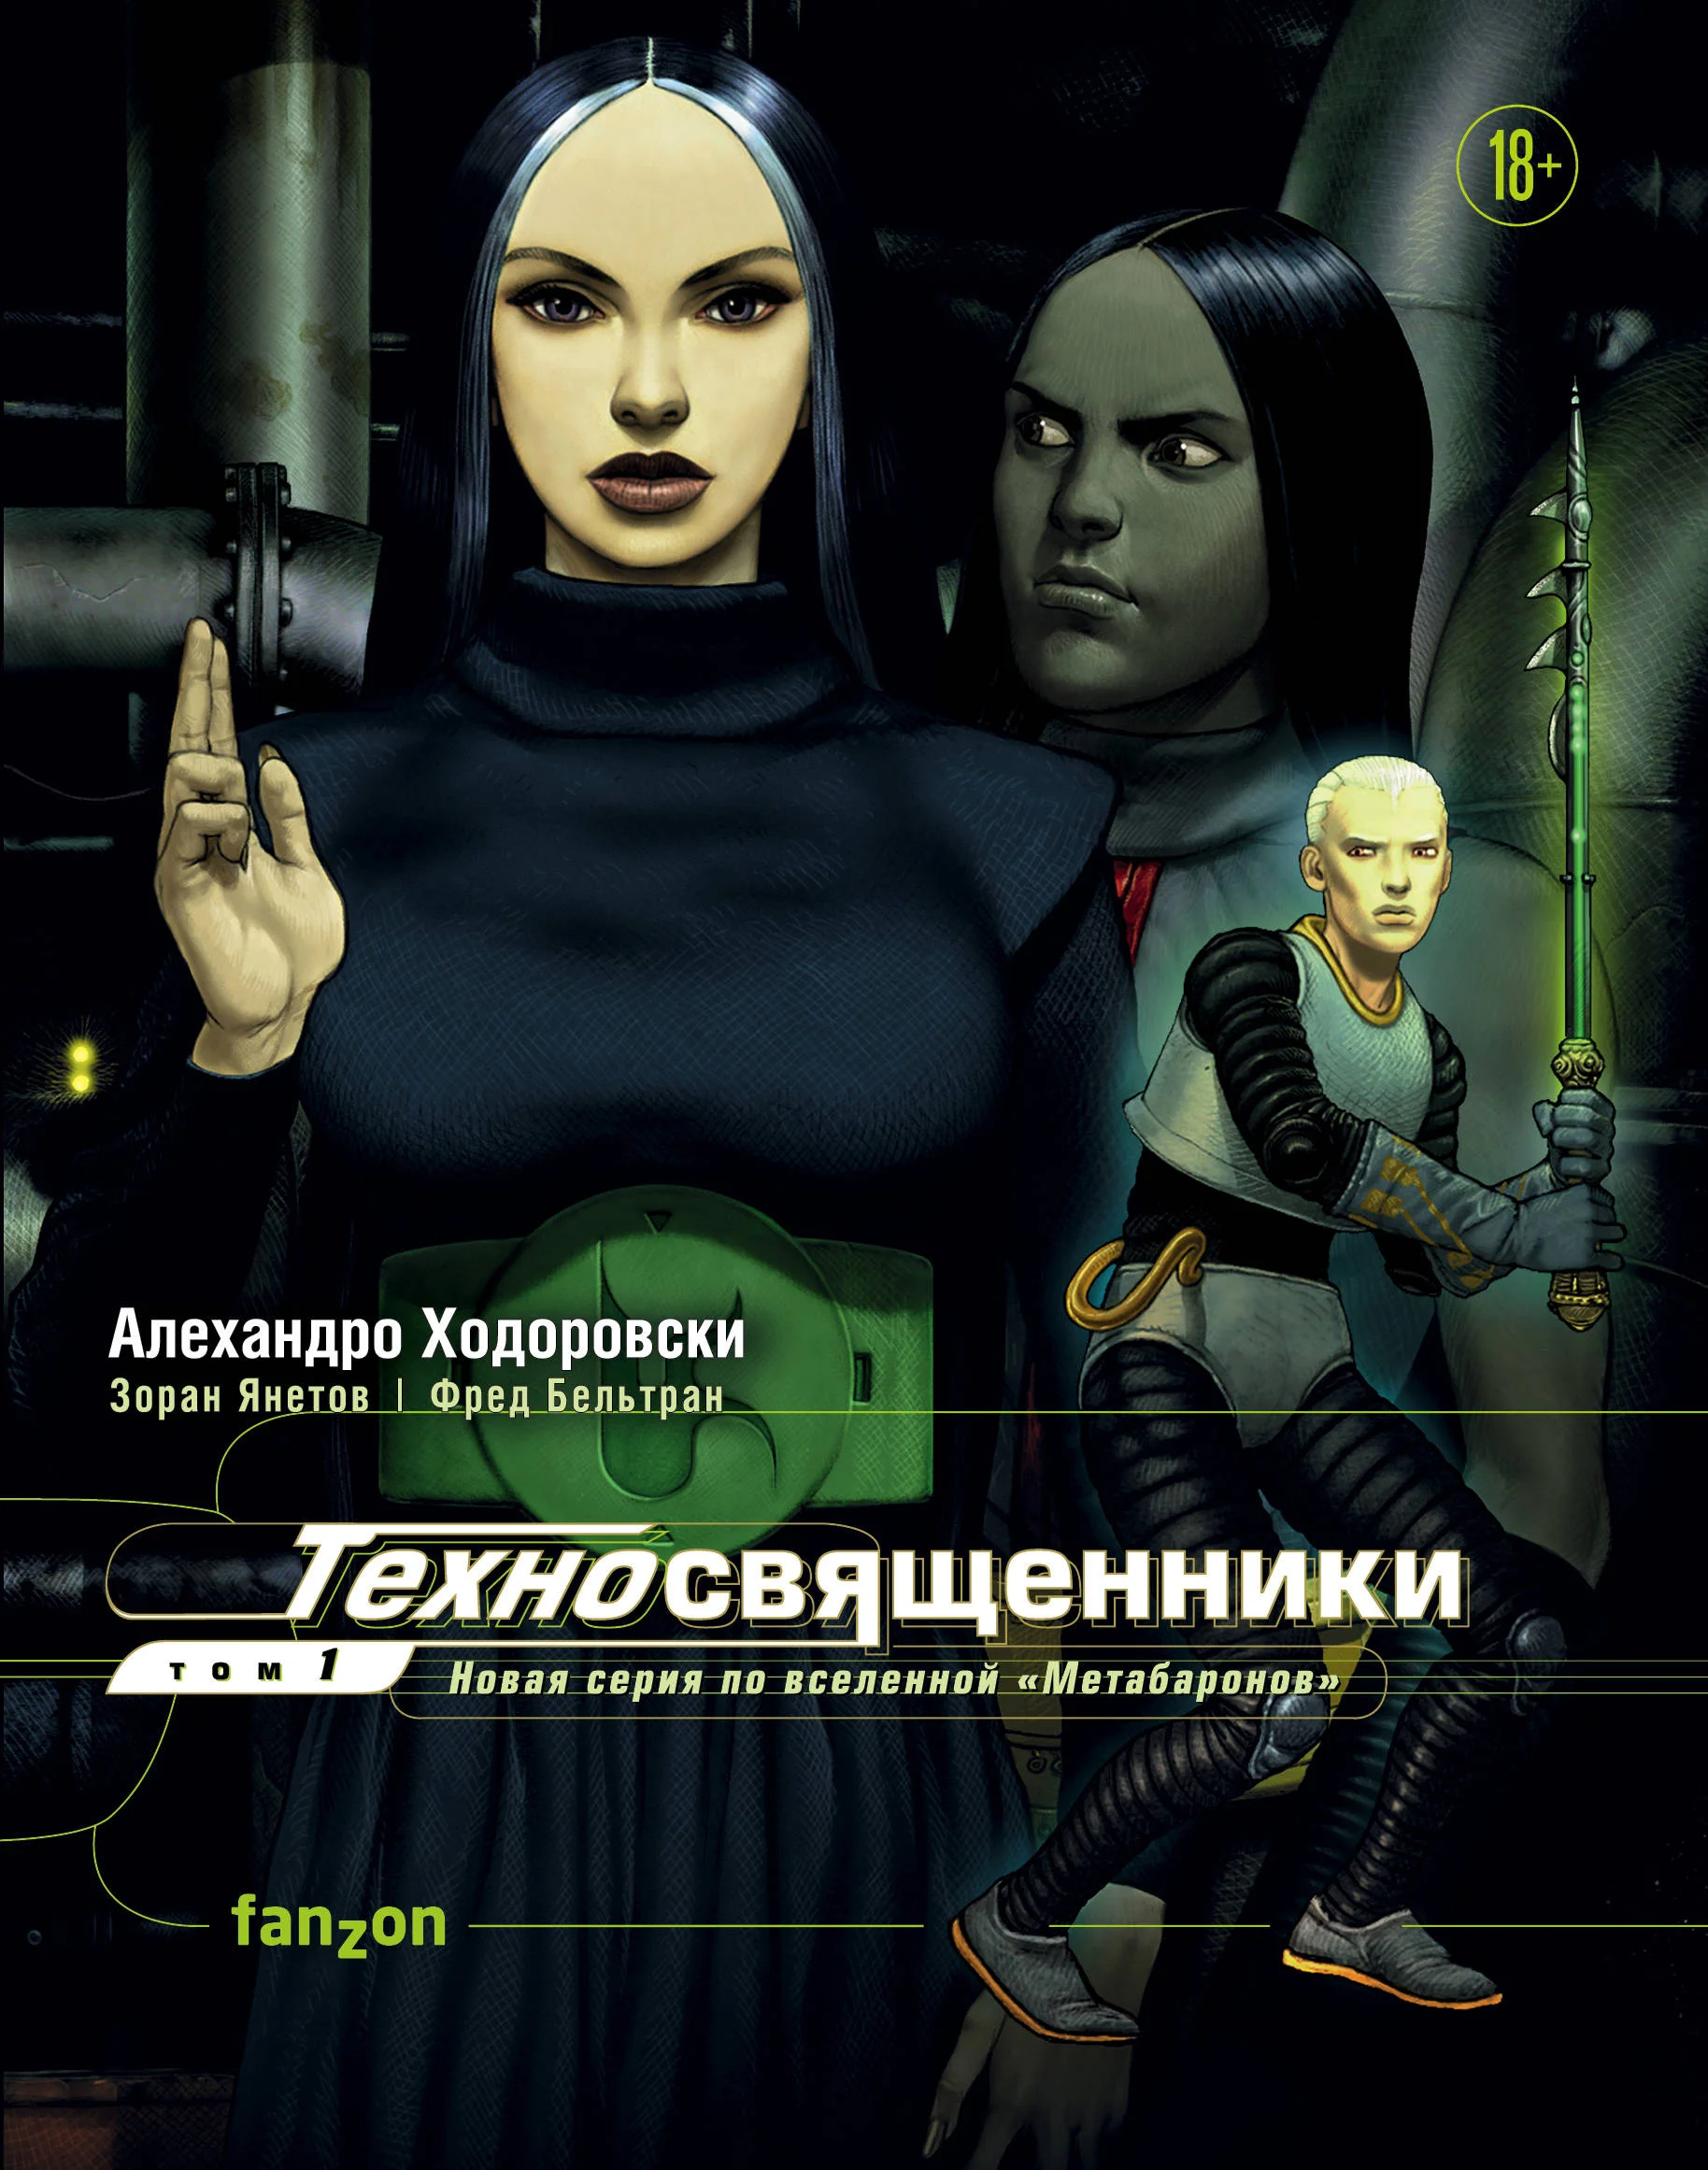 Что почитать из киберпанковских комиксов, изданных в России?